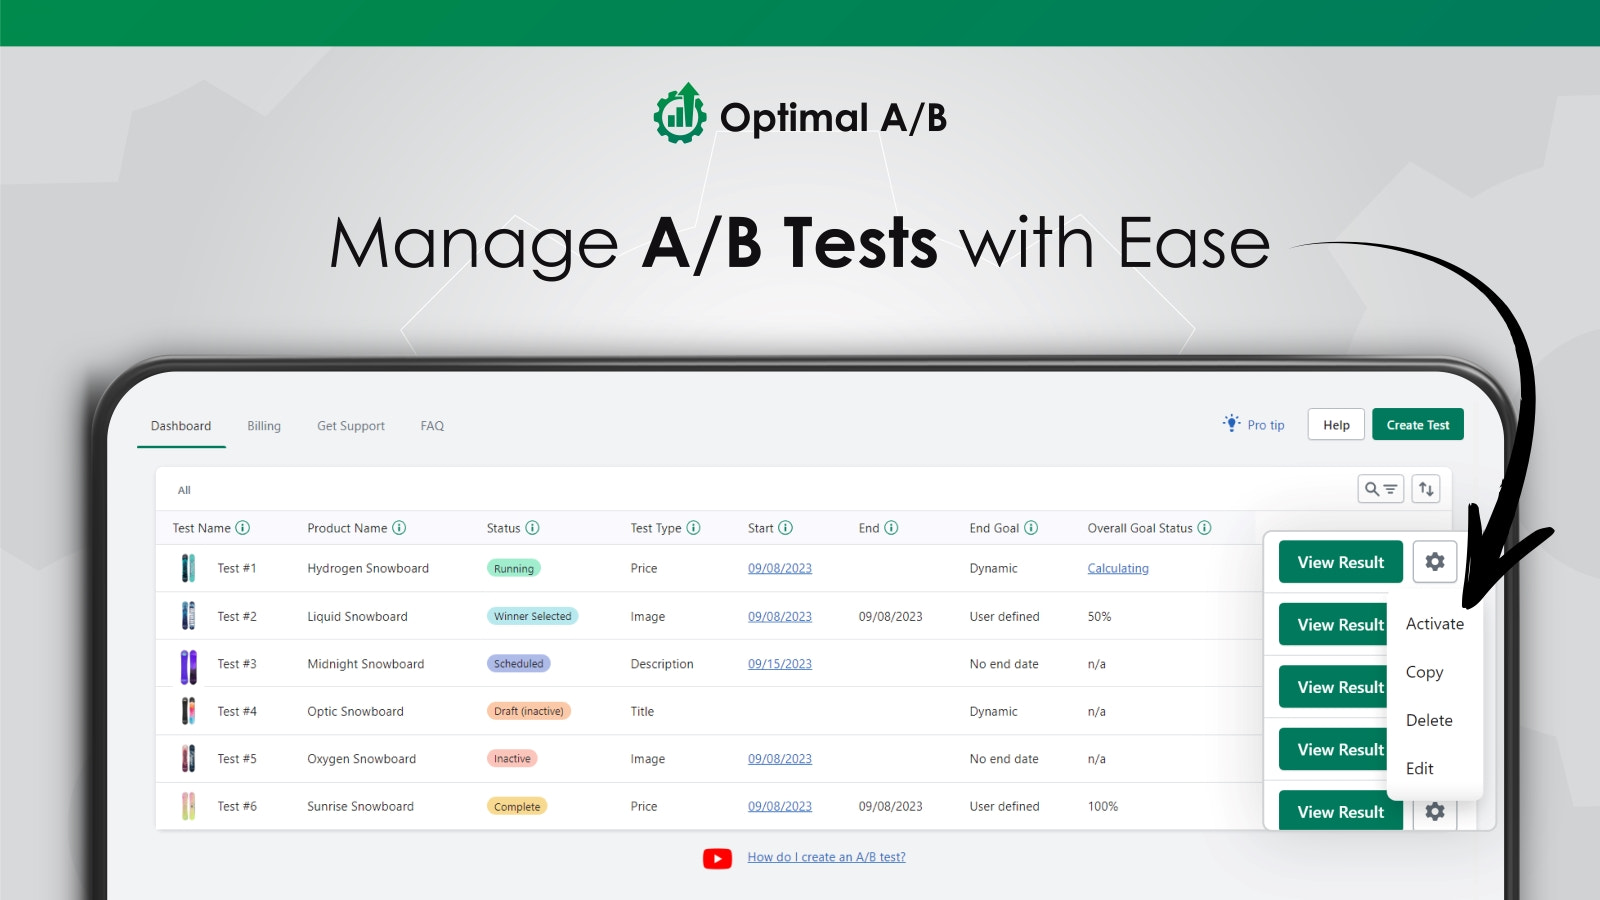 Optimal A/B vous permet de gérer les tests A/B avec facilité